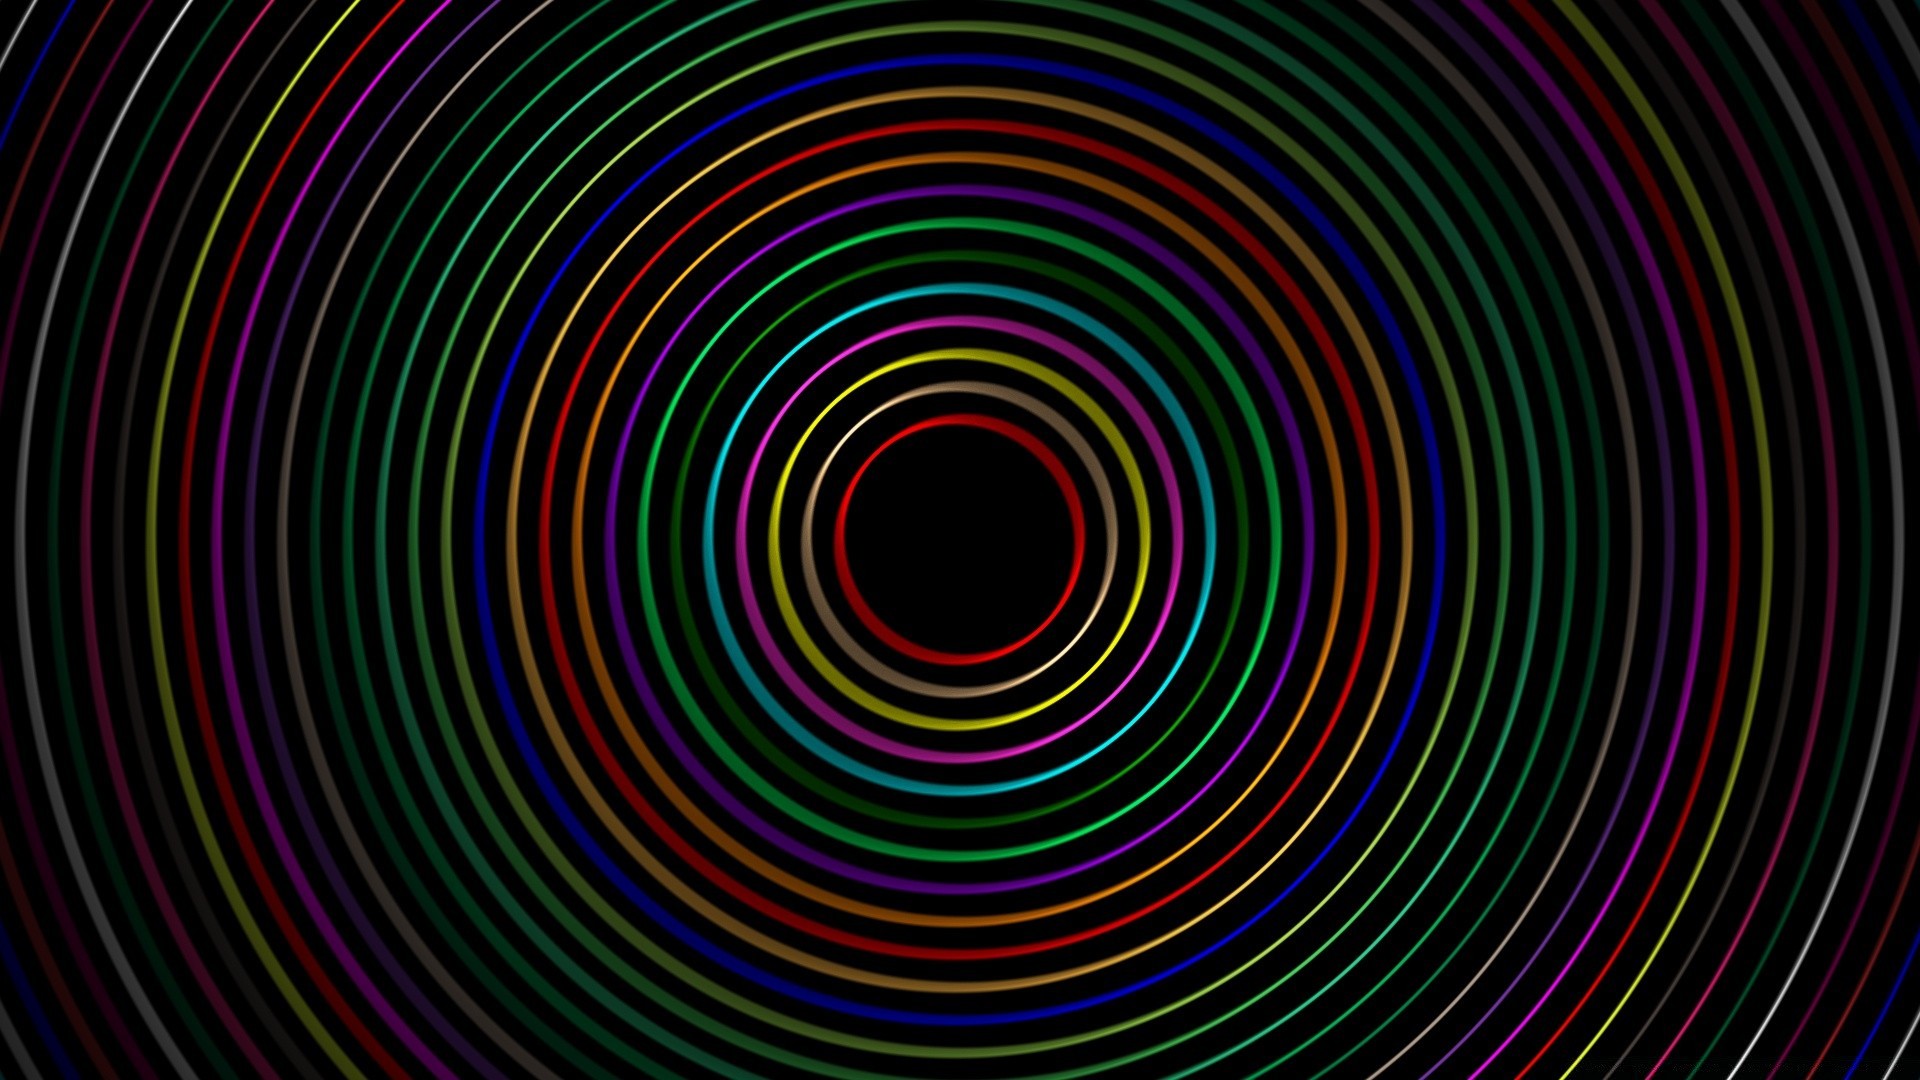 абстракция вихрь круглый обои шаблон дизайн текстура искусство формы график иллюстрация художественный поворот спираль геометрические футуристический творчество психоделика рабочего стола кривая